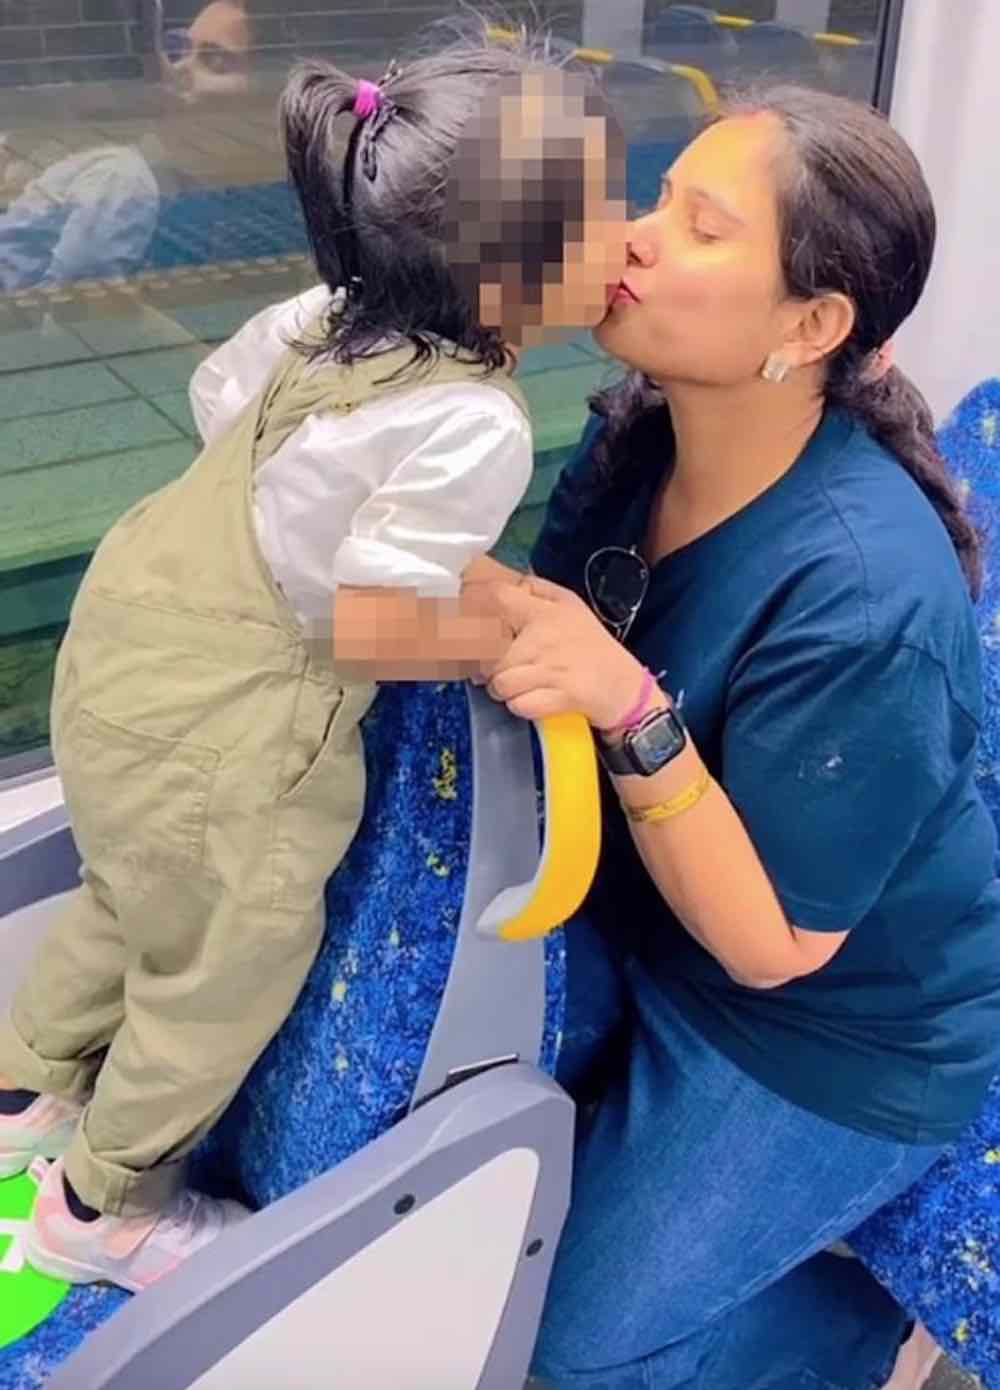 Una donna pubblica sui social un video in cui bacia sua figlia sulle labbra